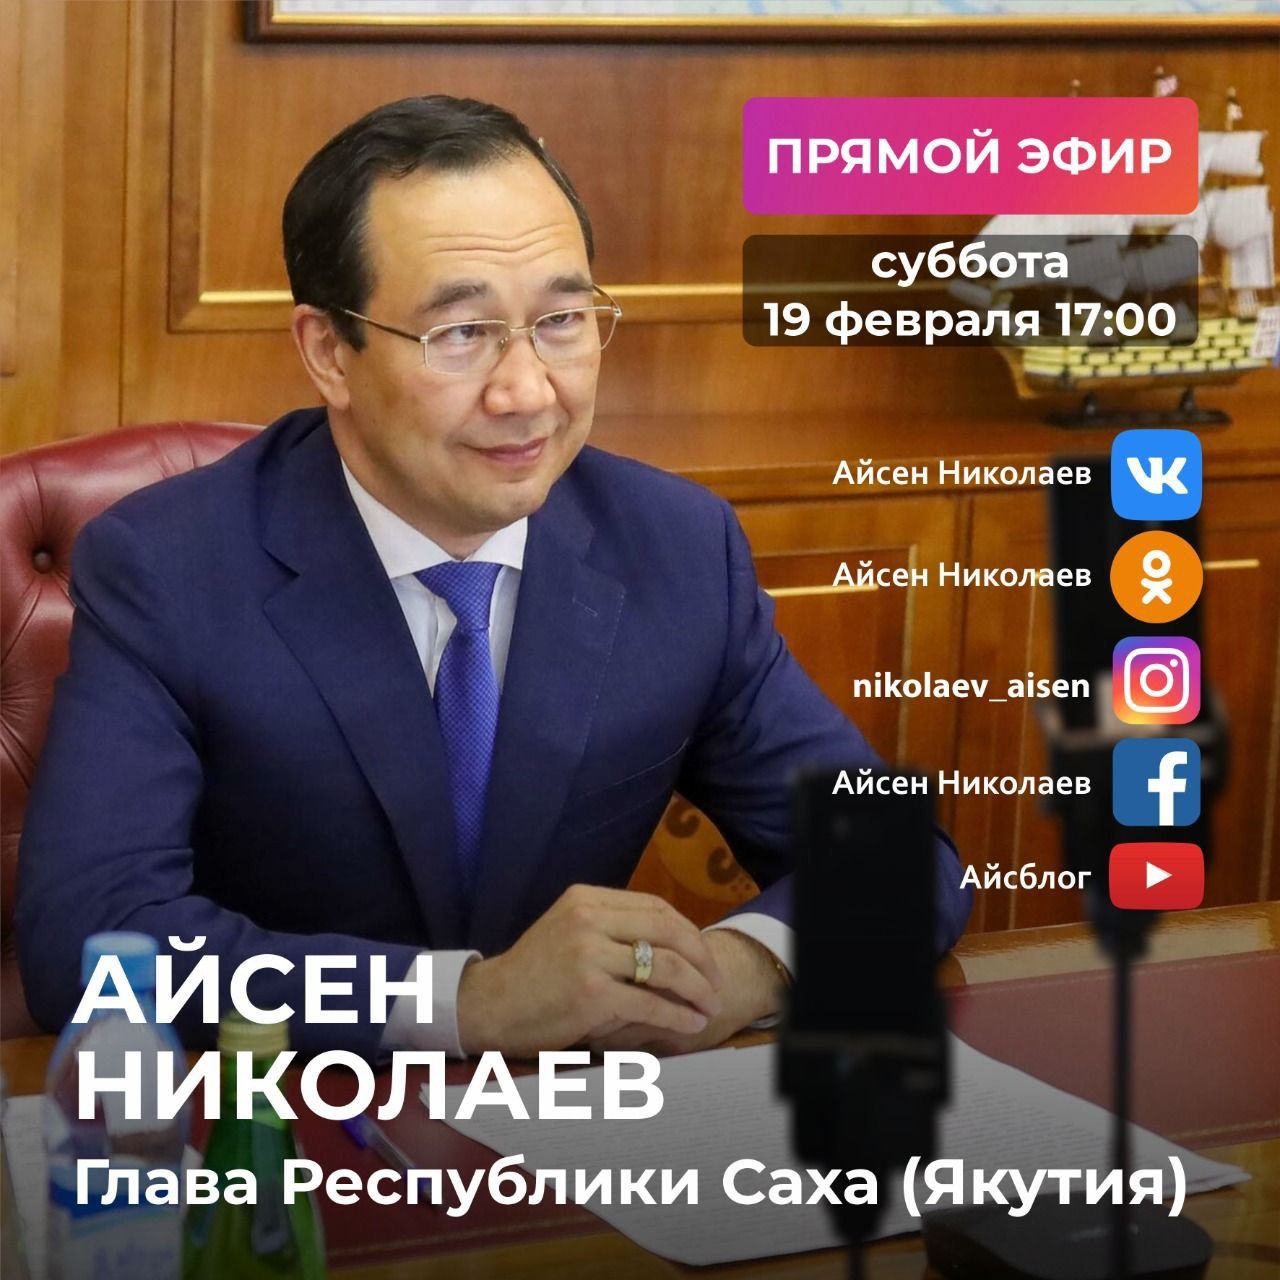 Глава Якутии проведет прямой эфир в соцсетях 19 февраля